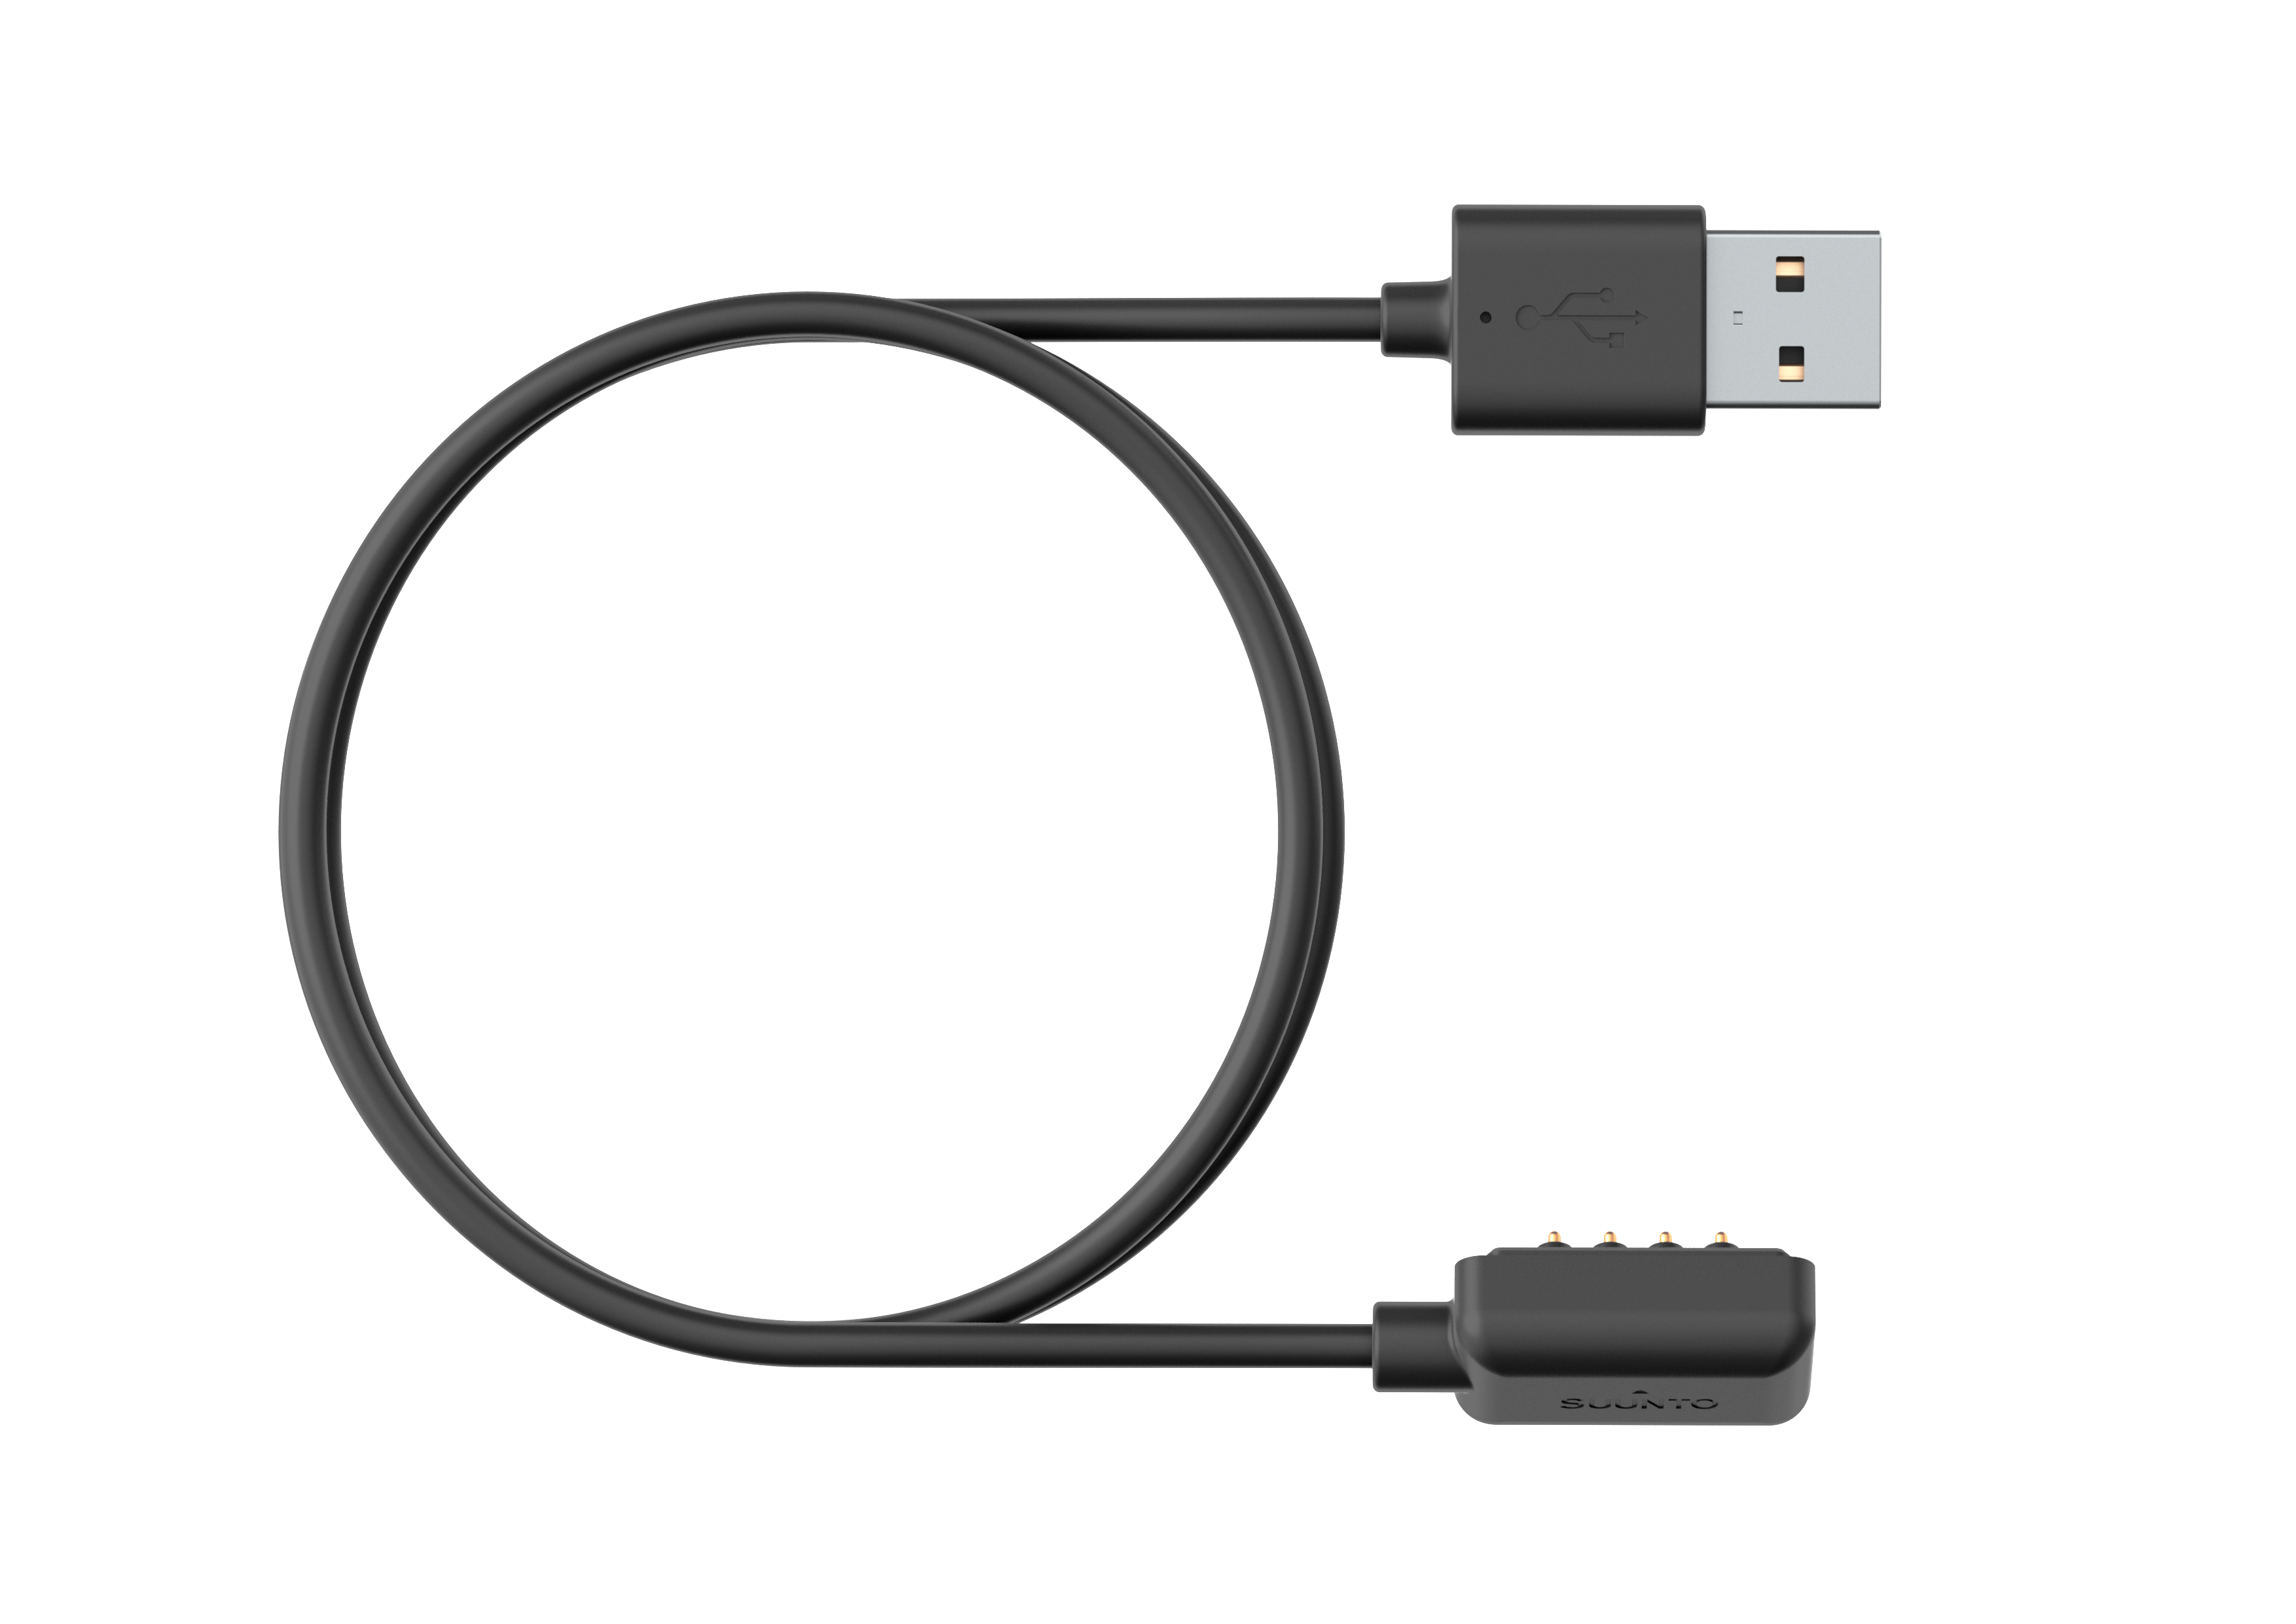 USBマグネットケーブル（ブラック）– Suuntoウォッチ専用充電・データ